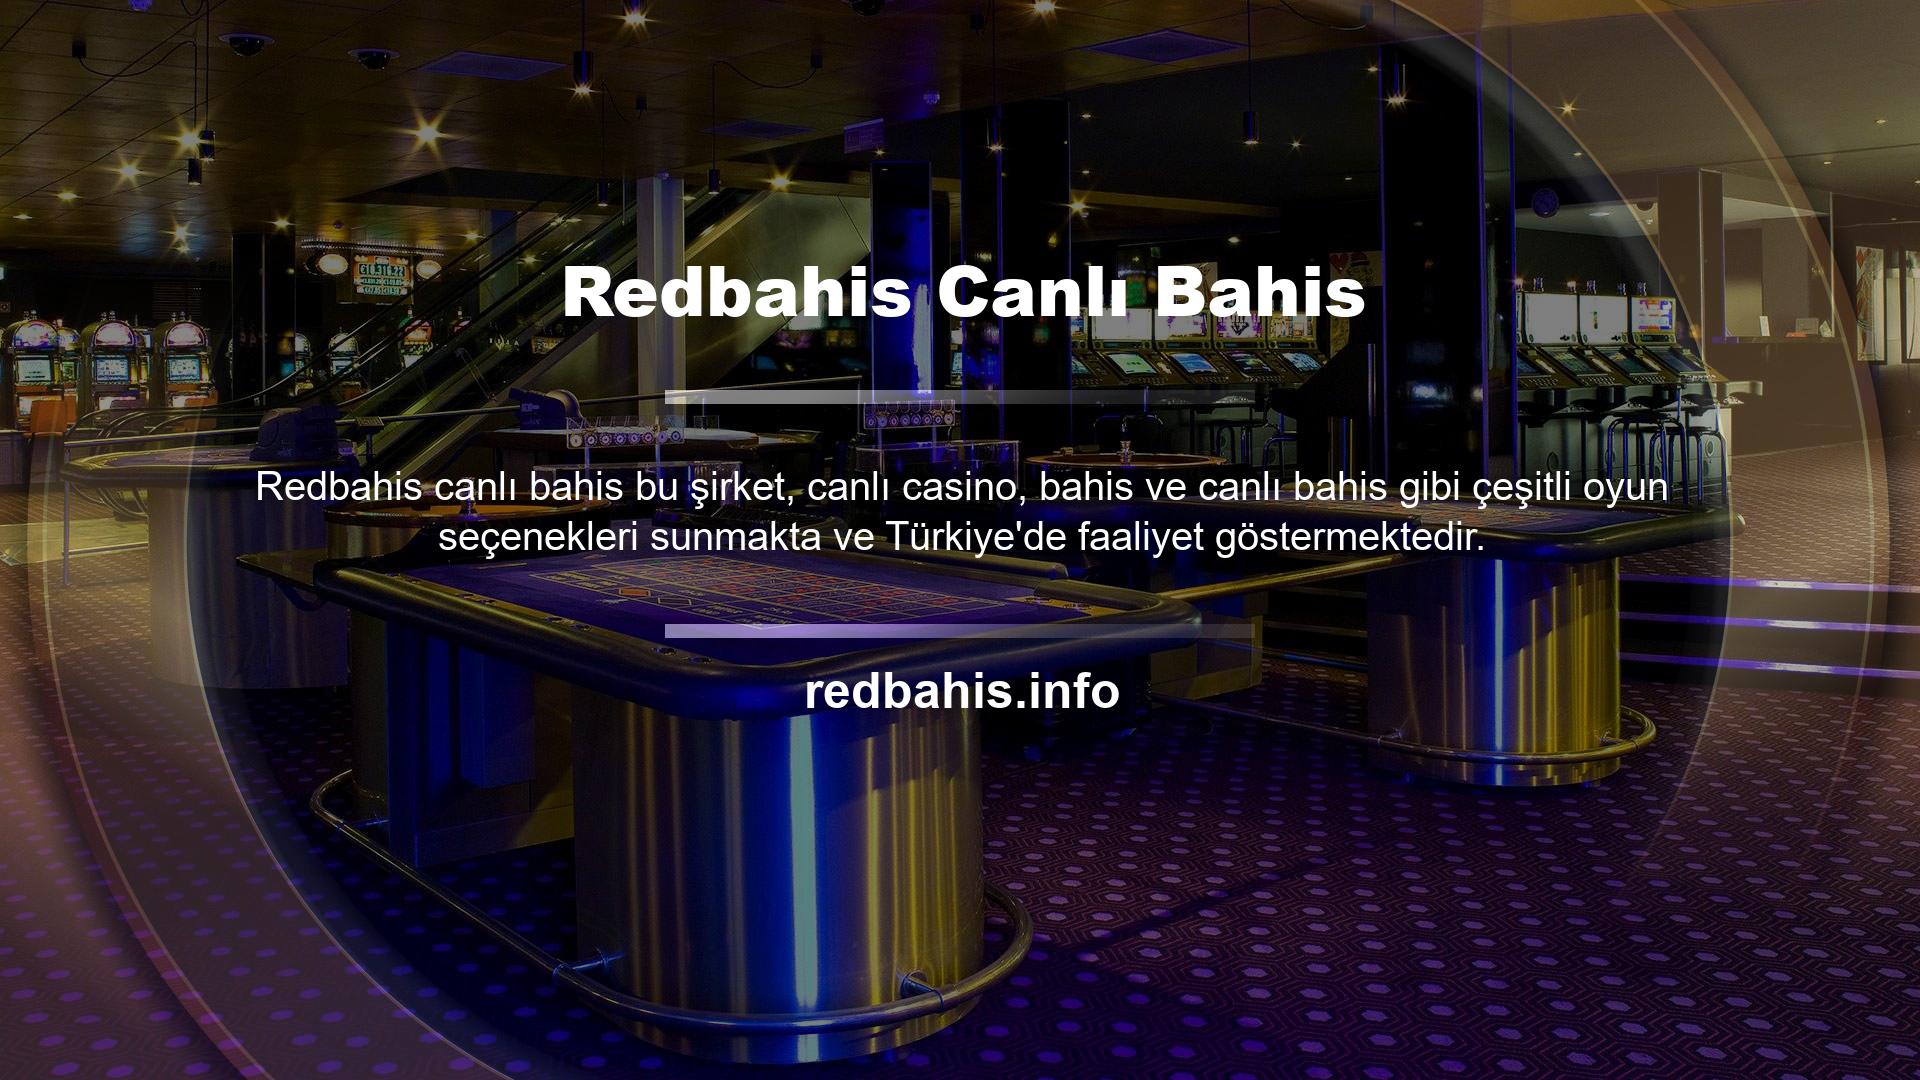 Redbahis web sitesi tamamen profesyonel bir kadro tarafından hizmet vermektedir ve bu da onu en ünlü bahis sitelerinden biri haline getirmektedir